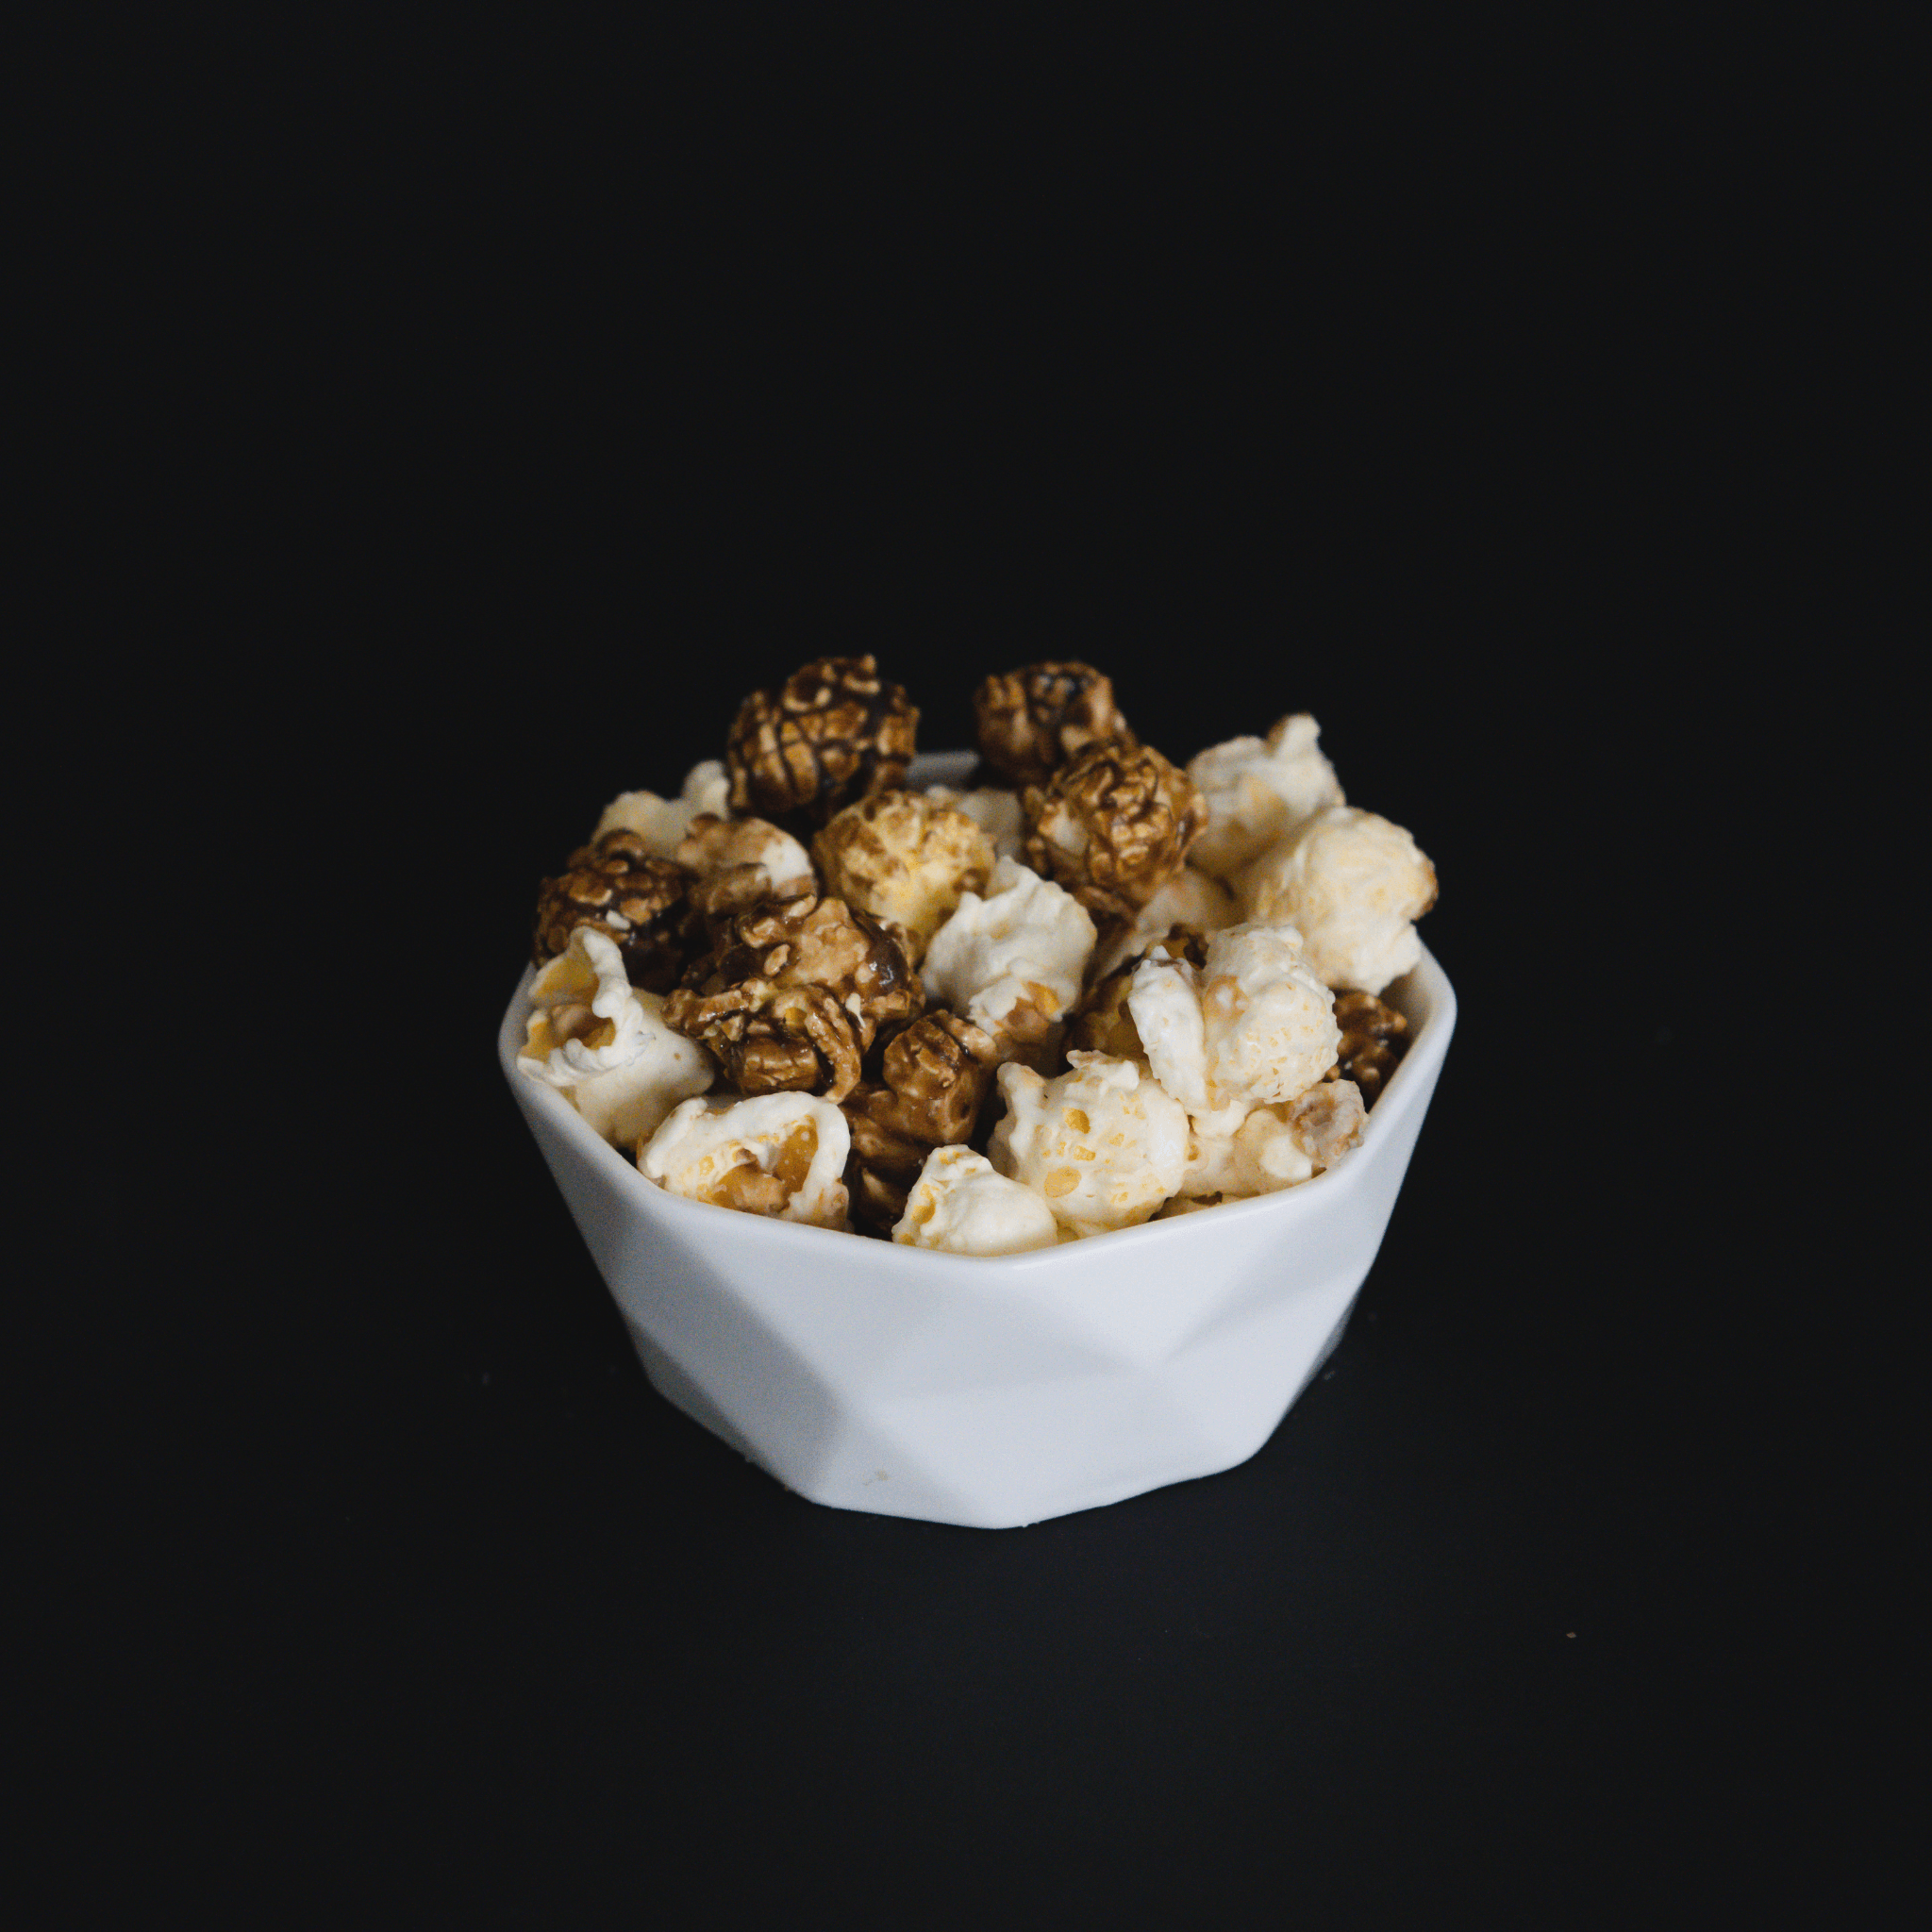 Cinnamon Roll Popcorn